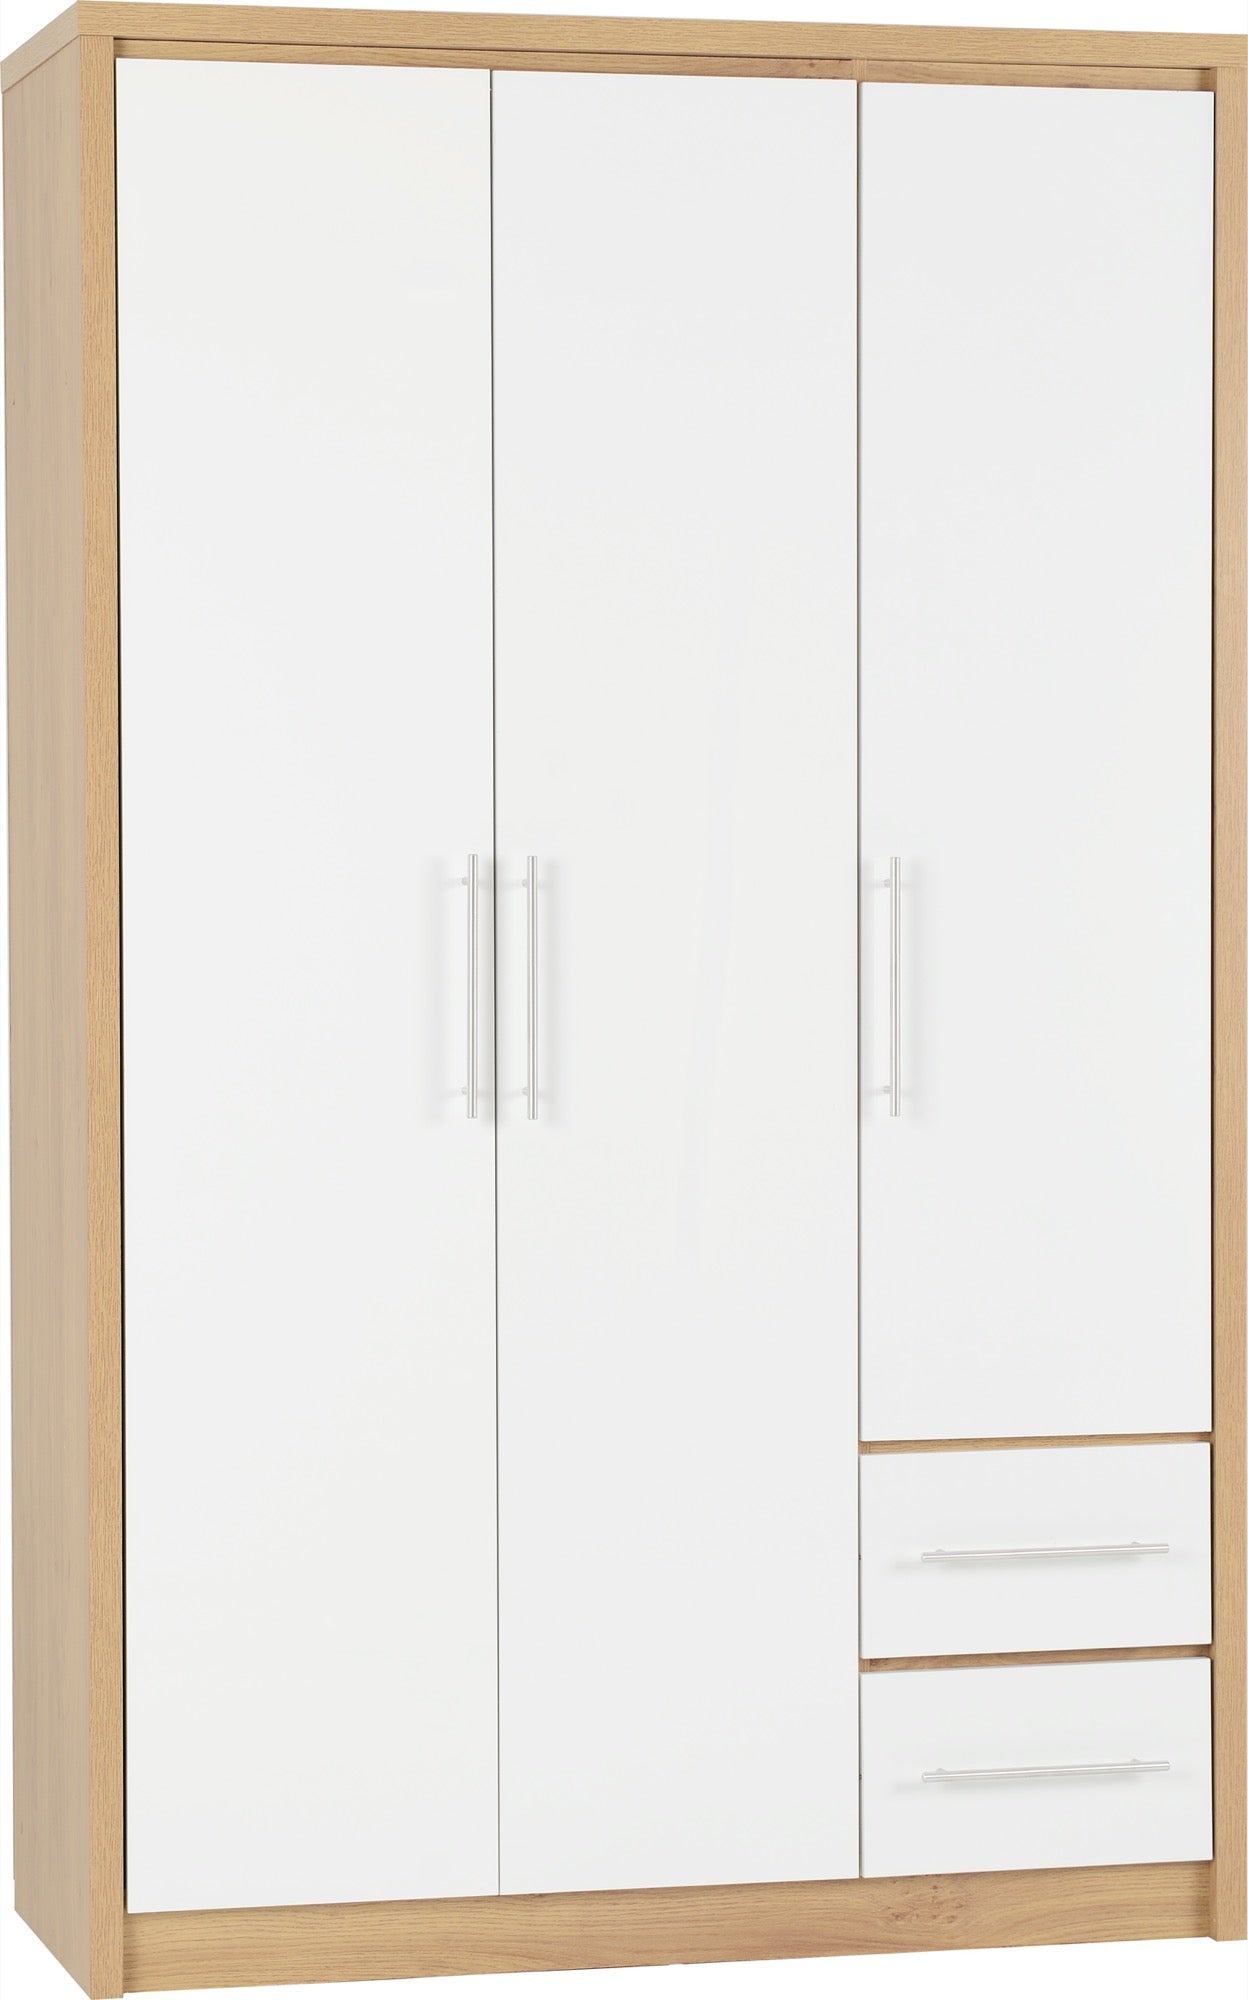 Seville 3 Door 2 Drawer Wardrobe - White High Gloss/Light Oak Effect Veneer